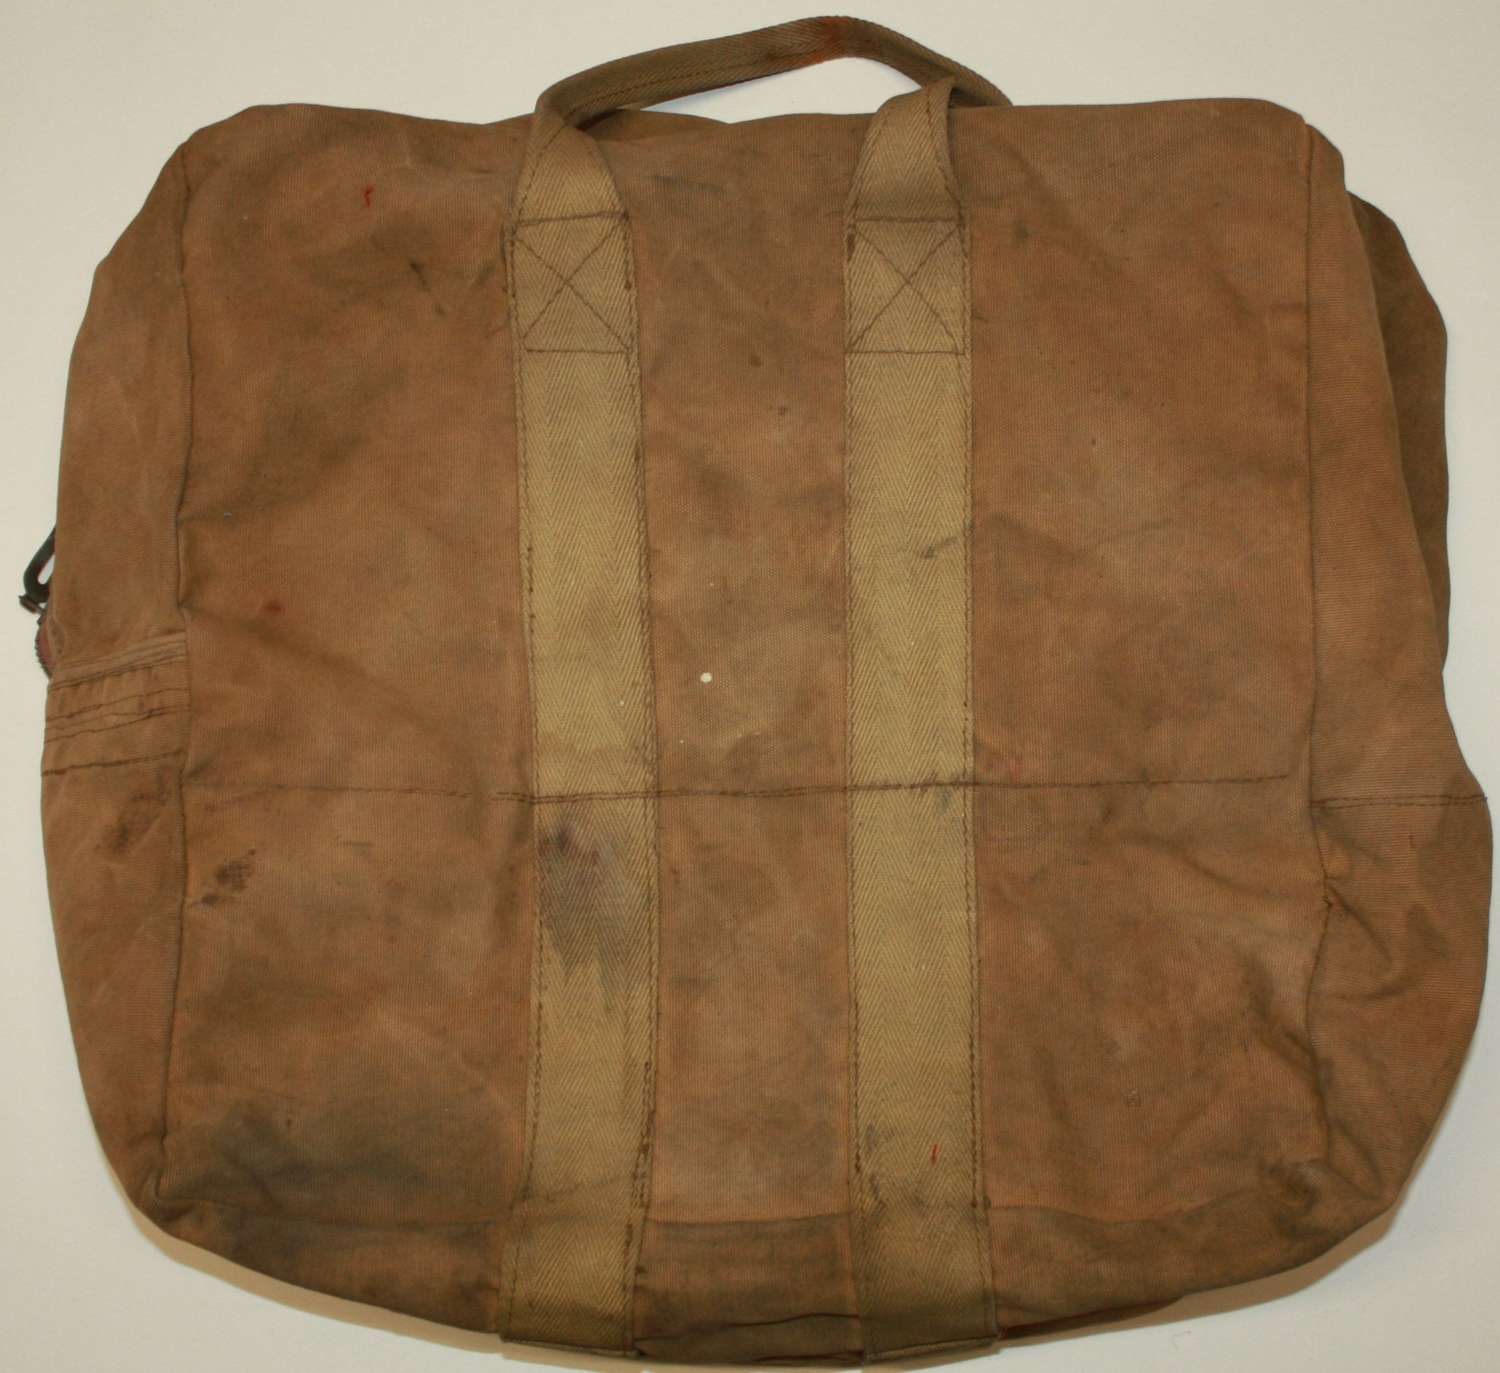 A WWII PERIOD RAF PARACHUTE BAG